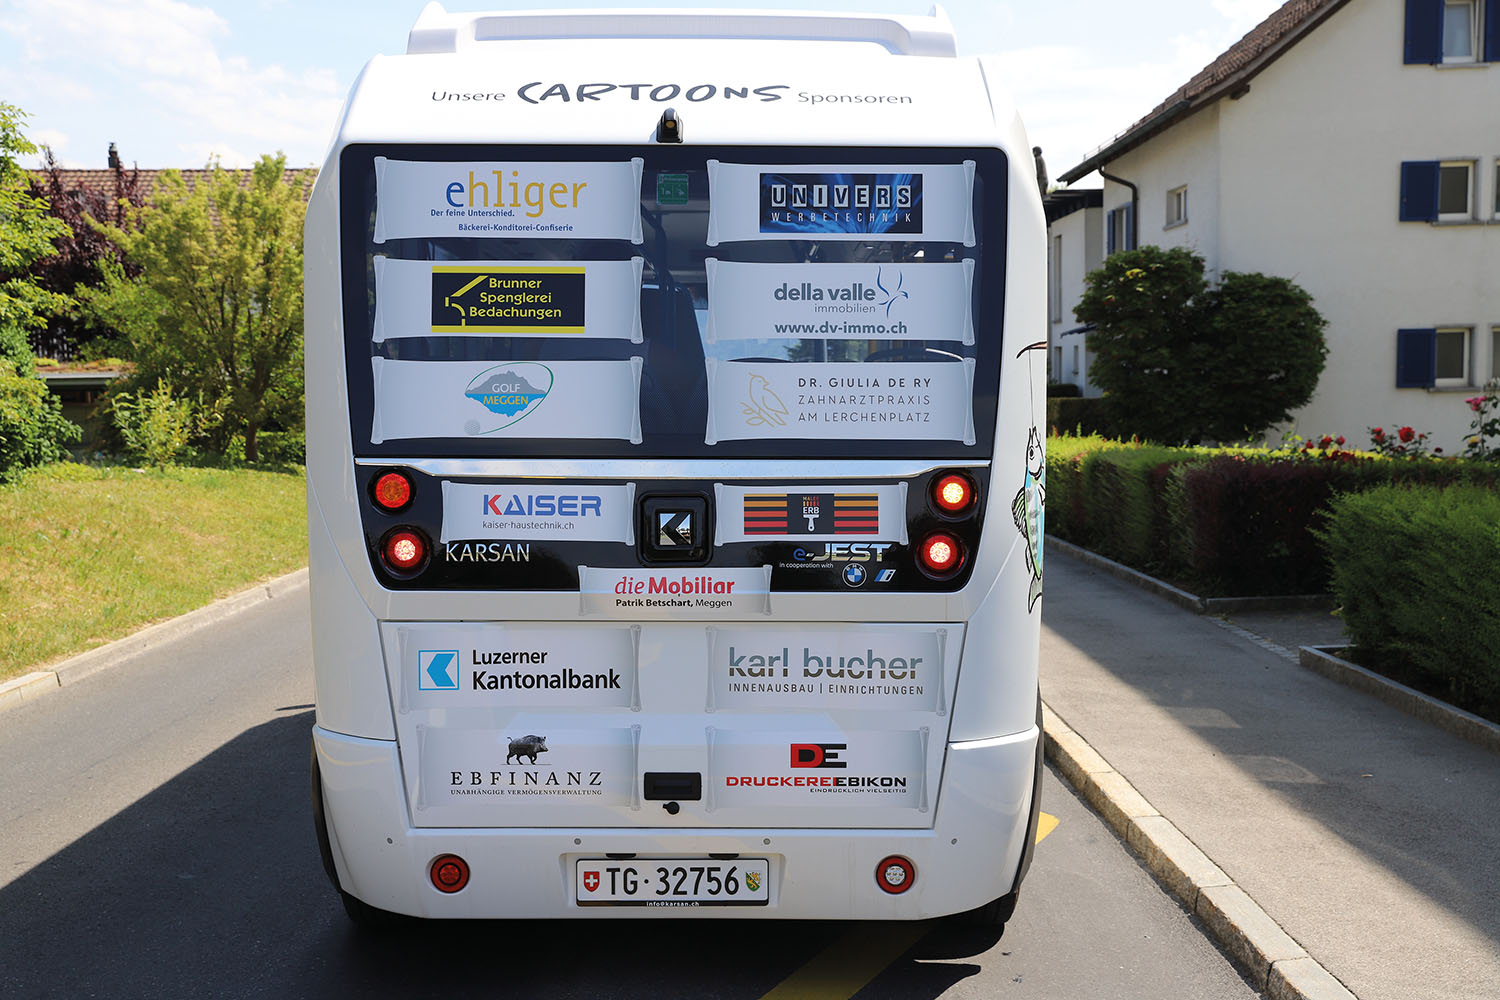 Auf der Vorder- und der Rückseite des Busses sind die Logos der Cartoons-Sponsoren angebracht.